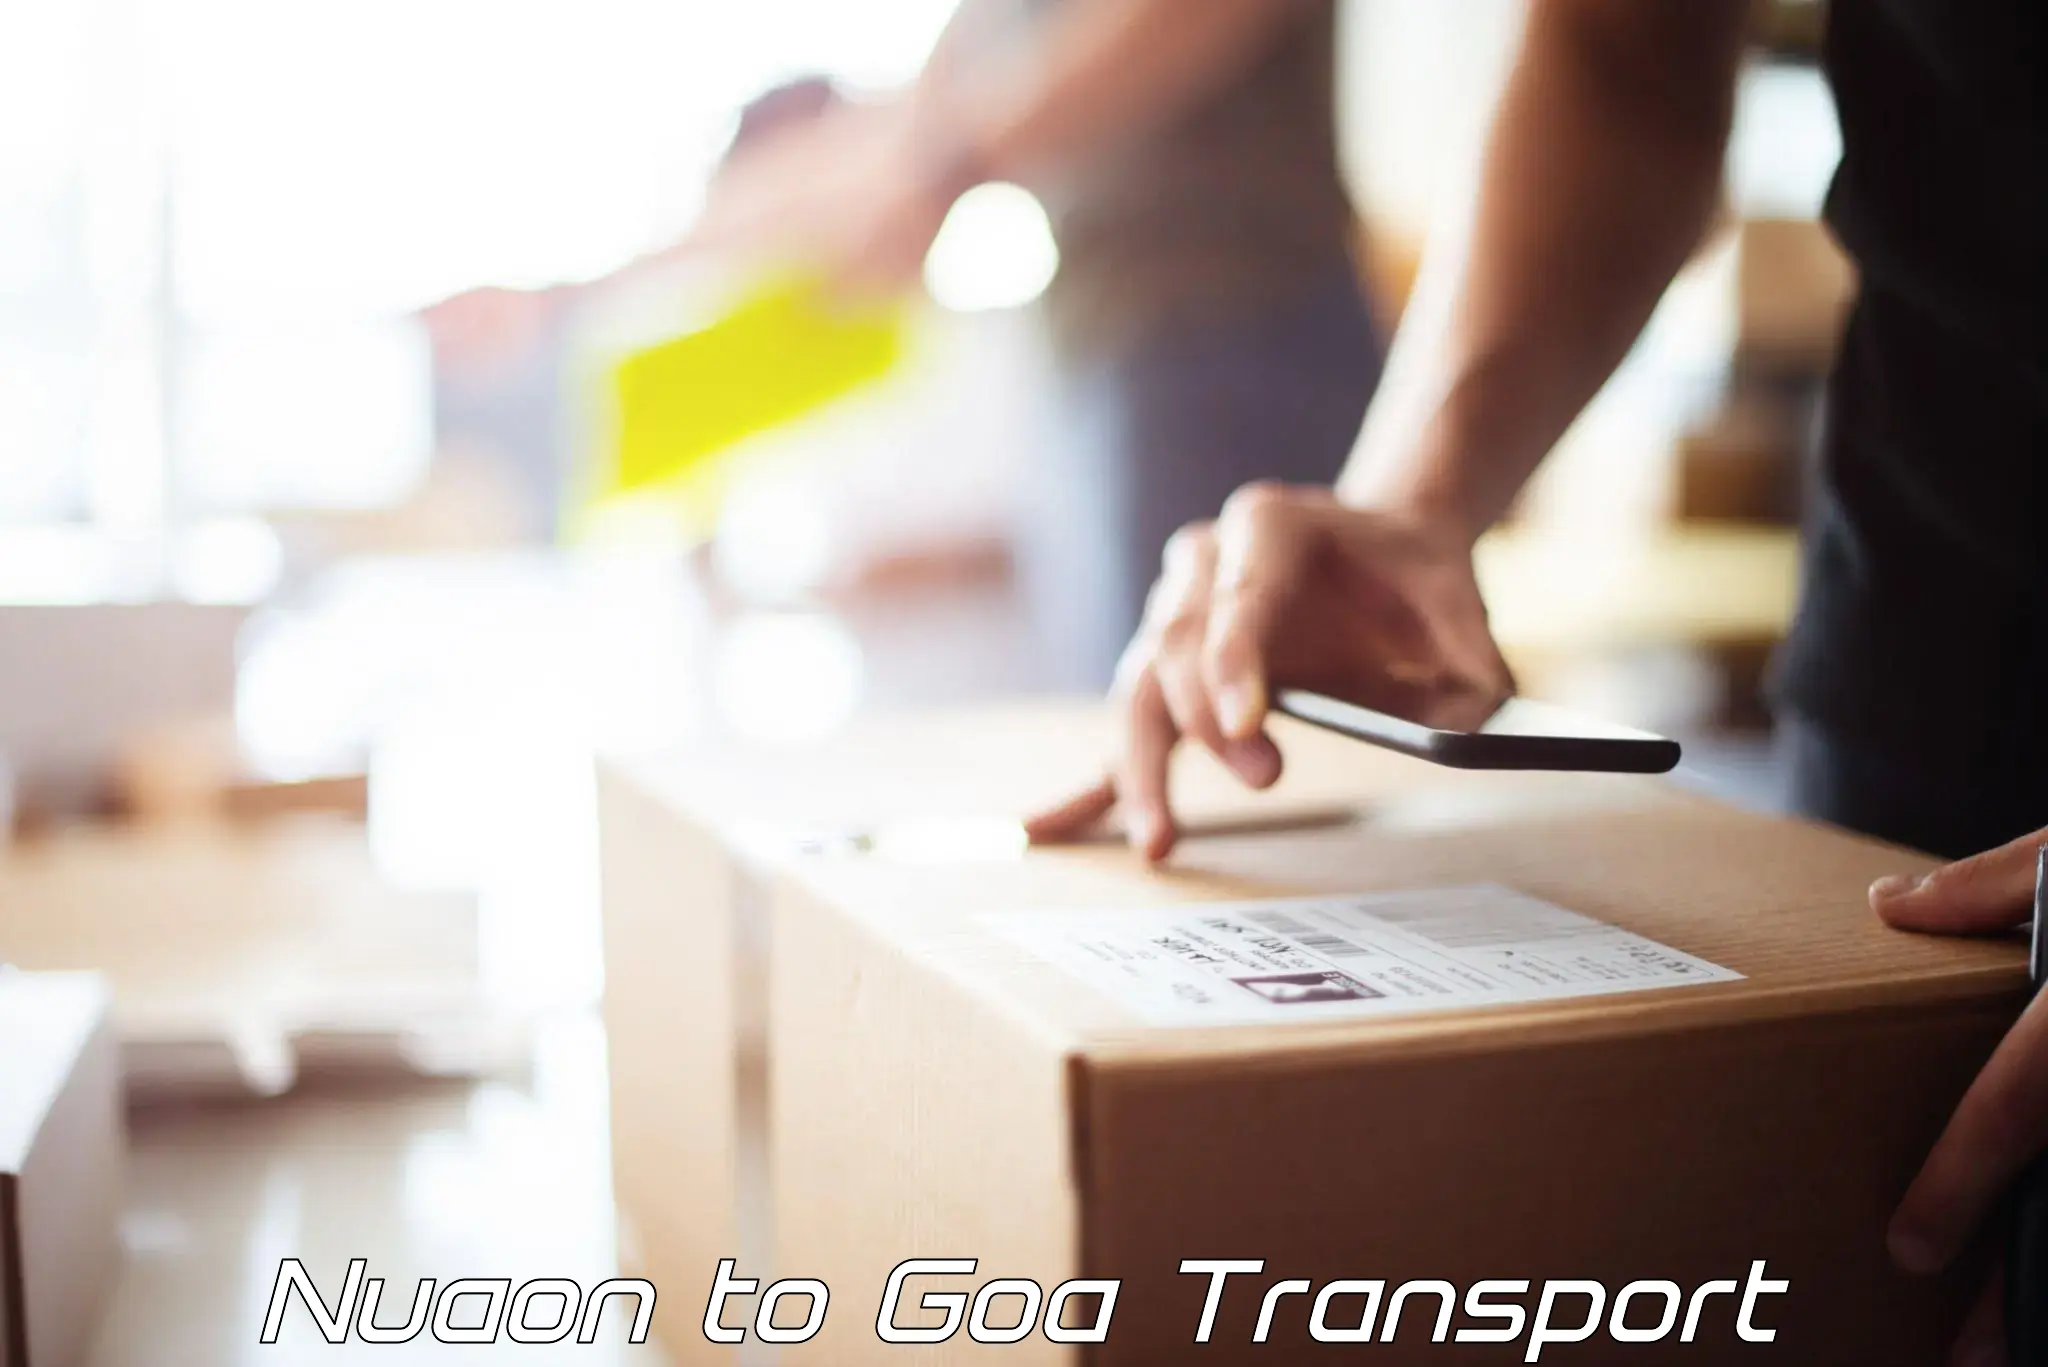 Online transport service Nuaon to IIT Goa